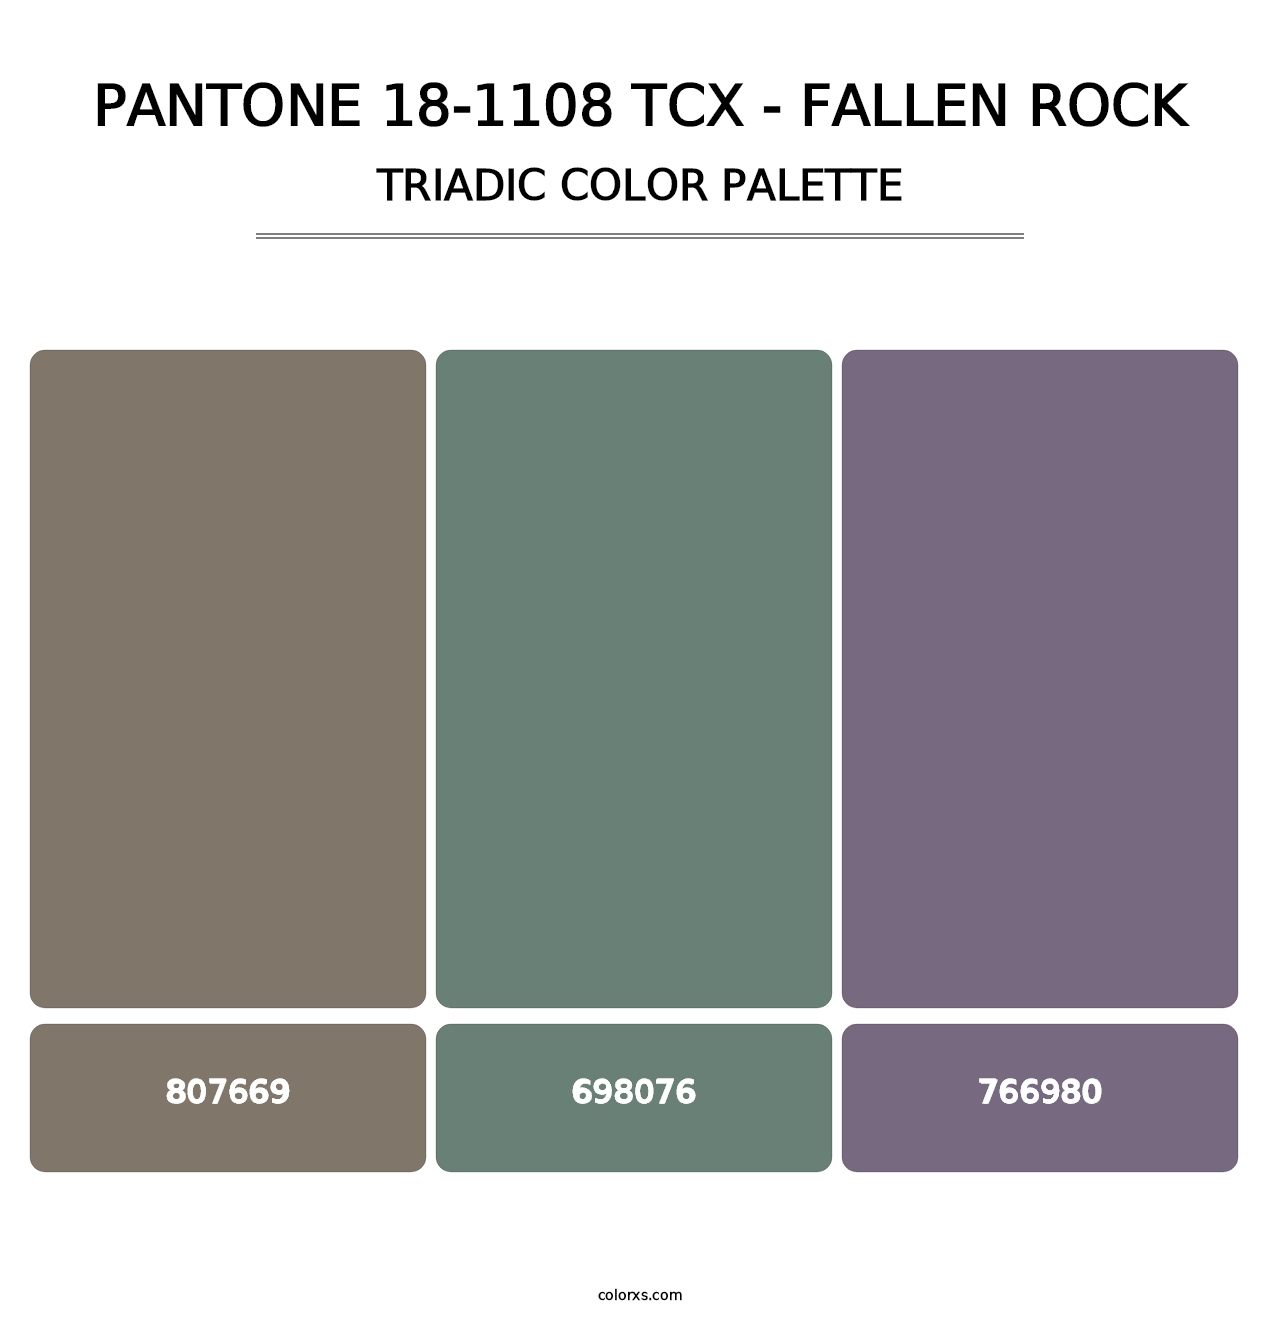 PANTONE 18-1108 TCX - Fallen Rock - Triadic Color Palette